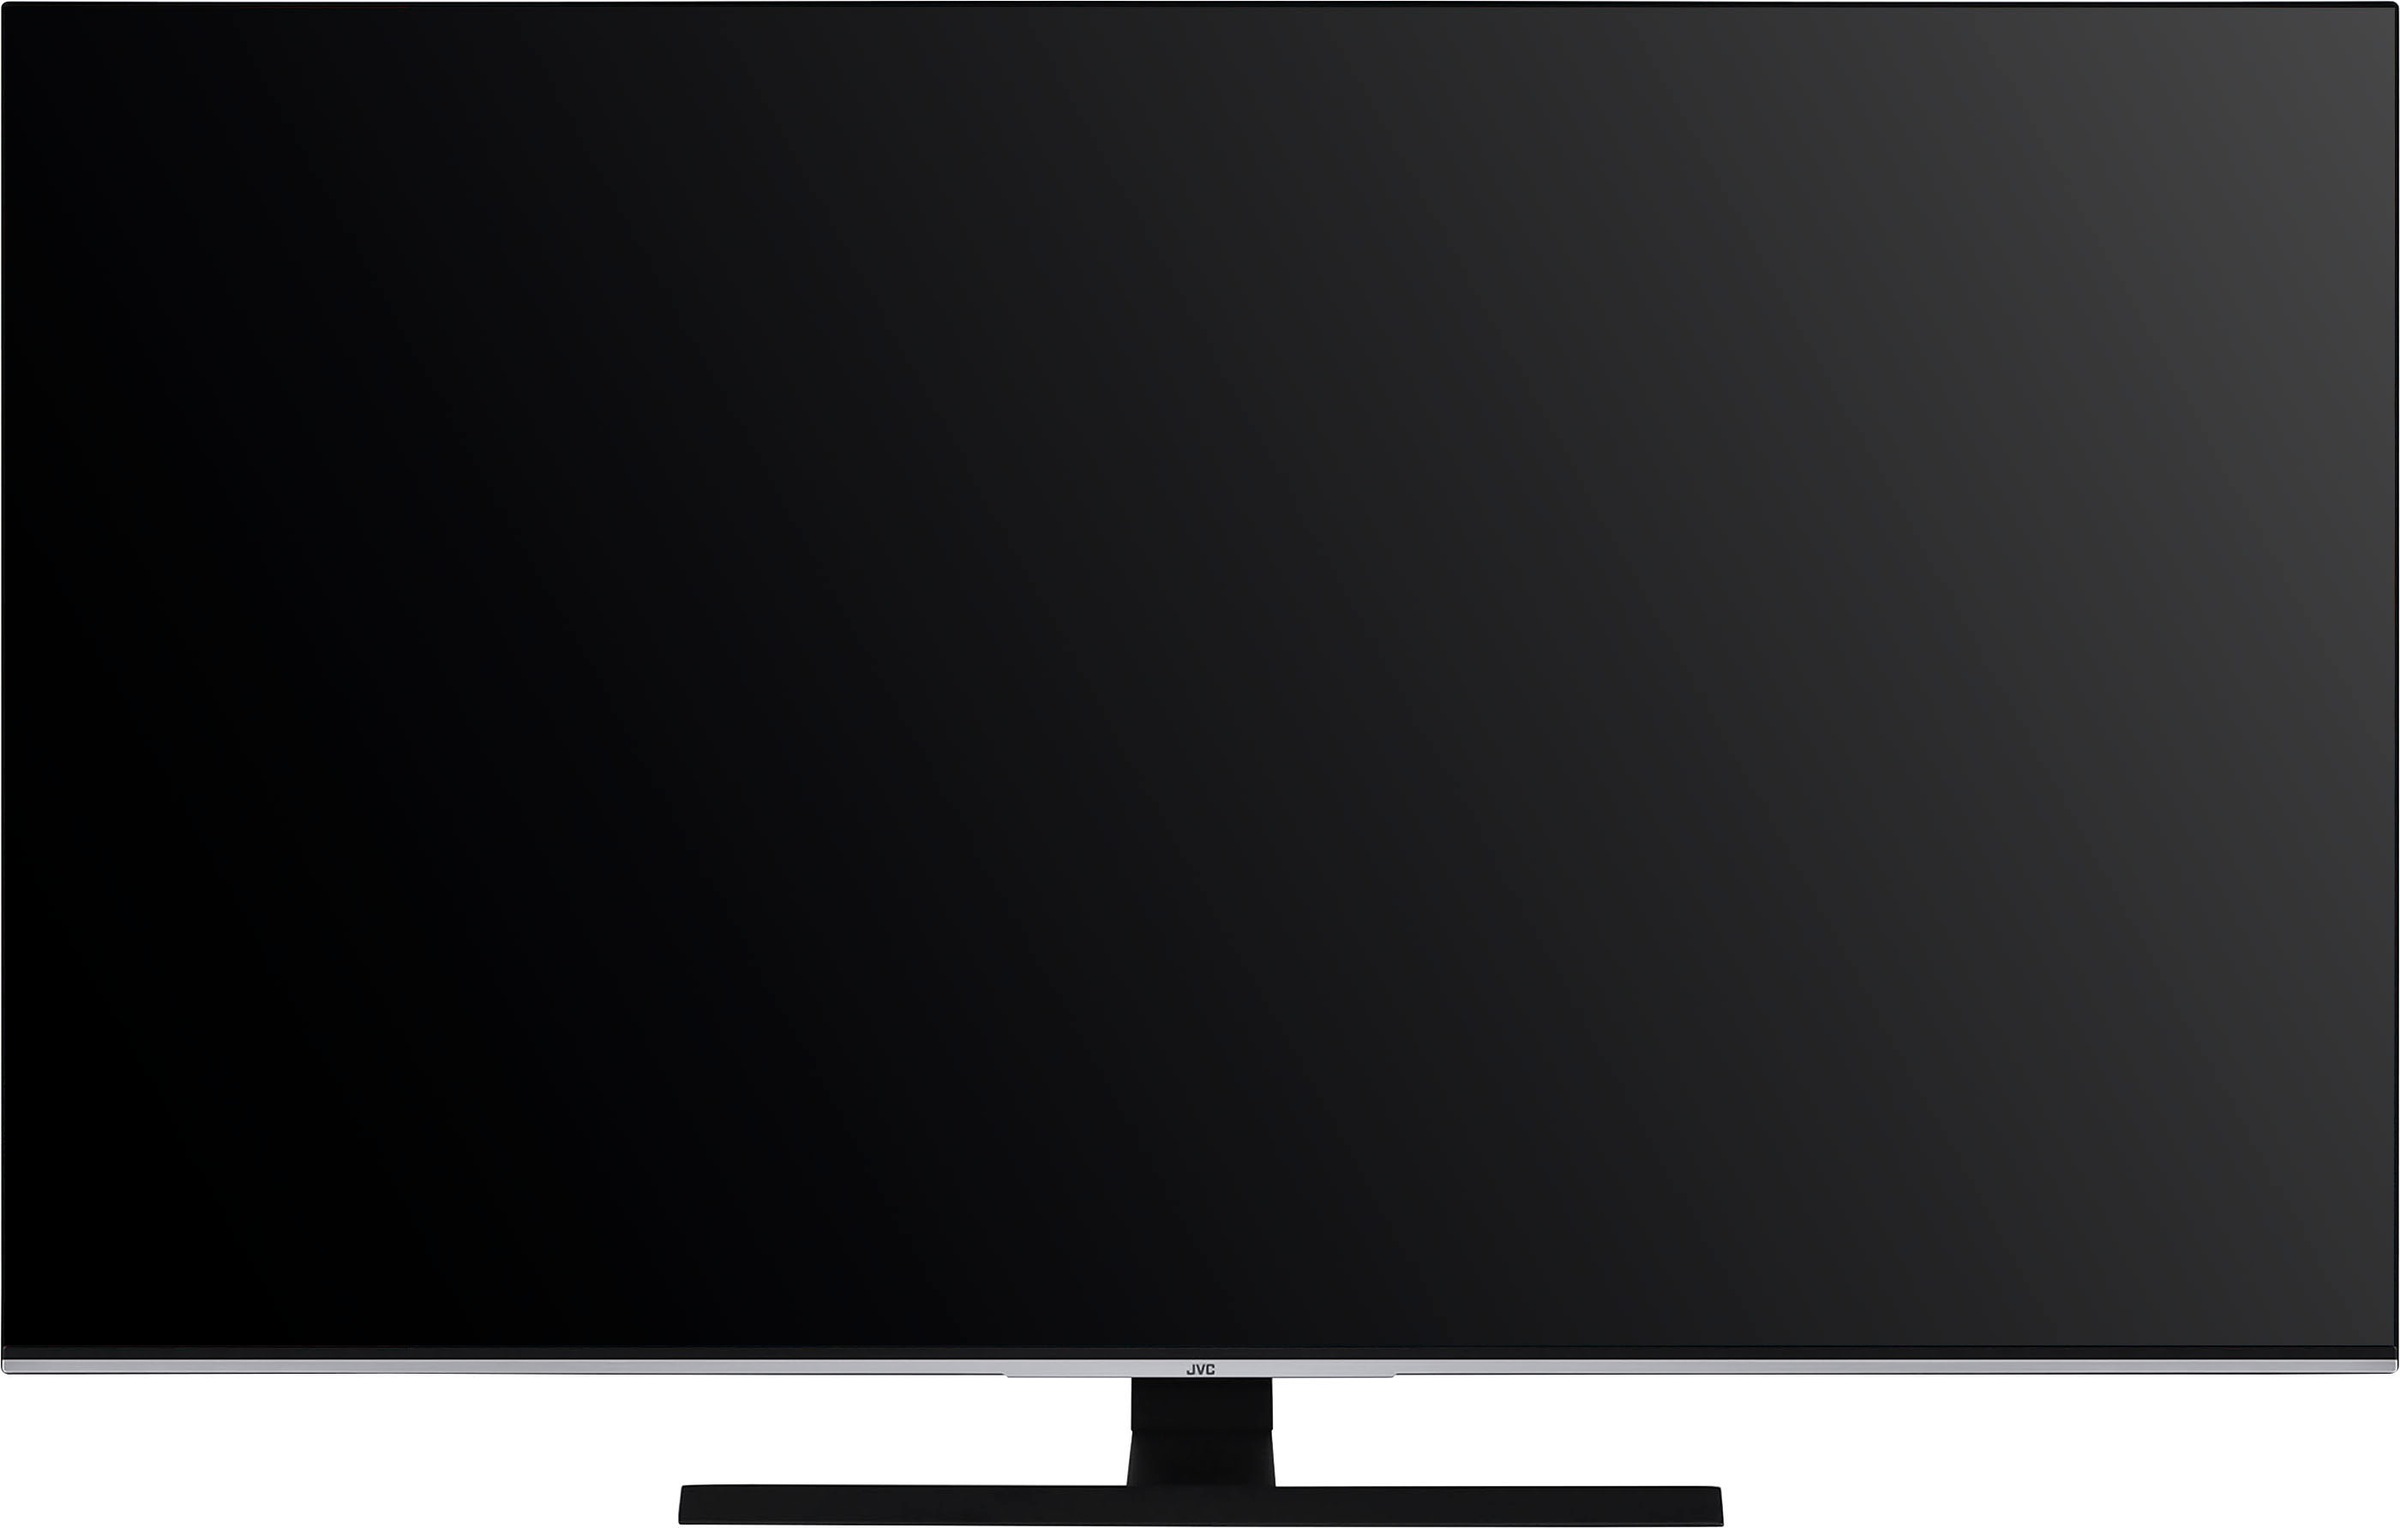 JVC LED-Fernseher »LT-65VU8156«, 164 cm/65 Zoll, 4K Ultra HD, Smart-TV